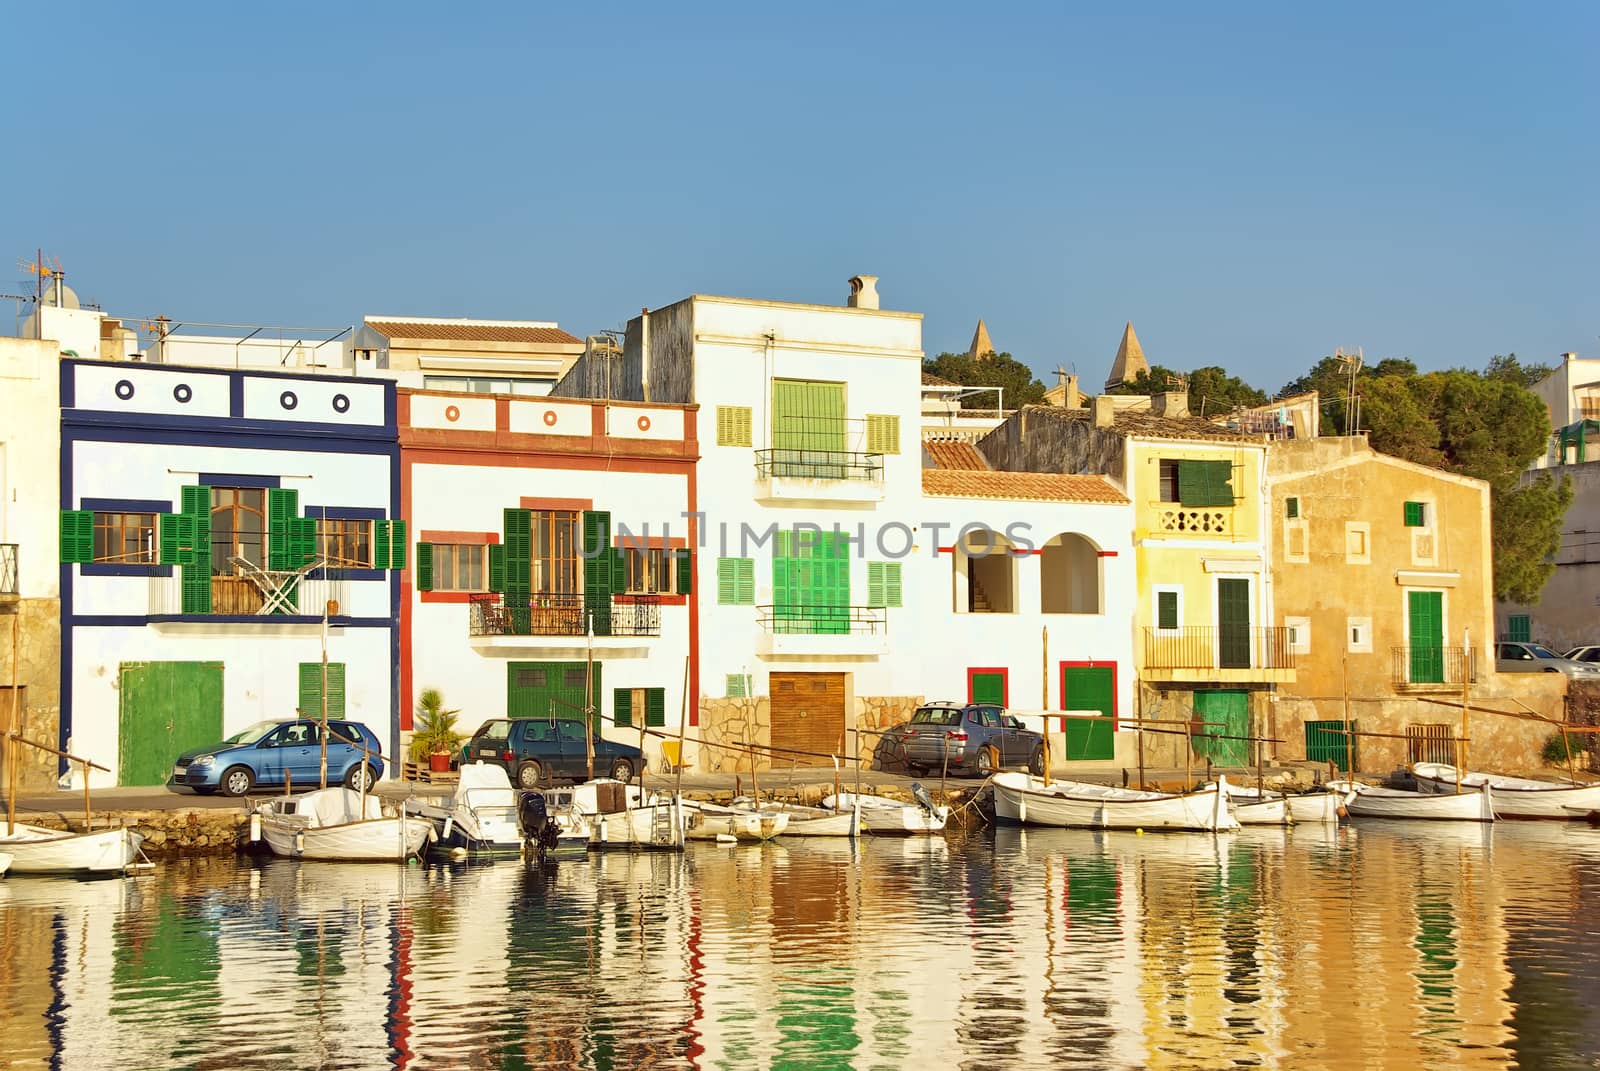 Porto Colom typical seaside village in Majorca (Spain)